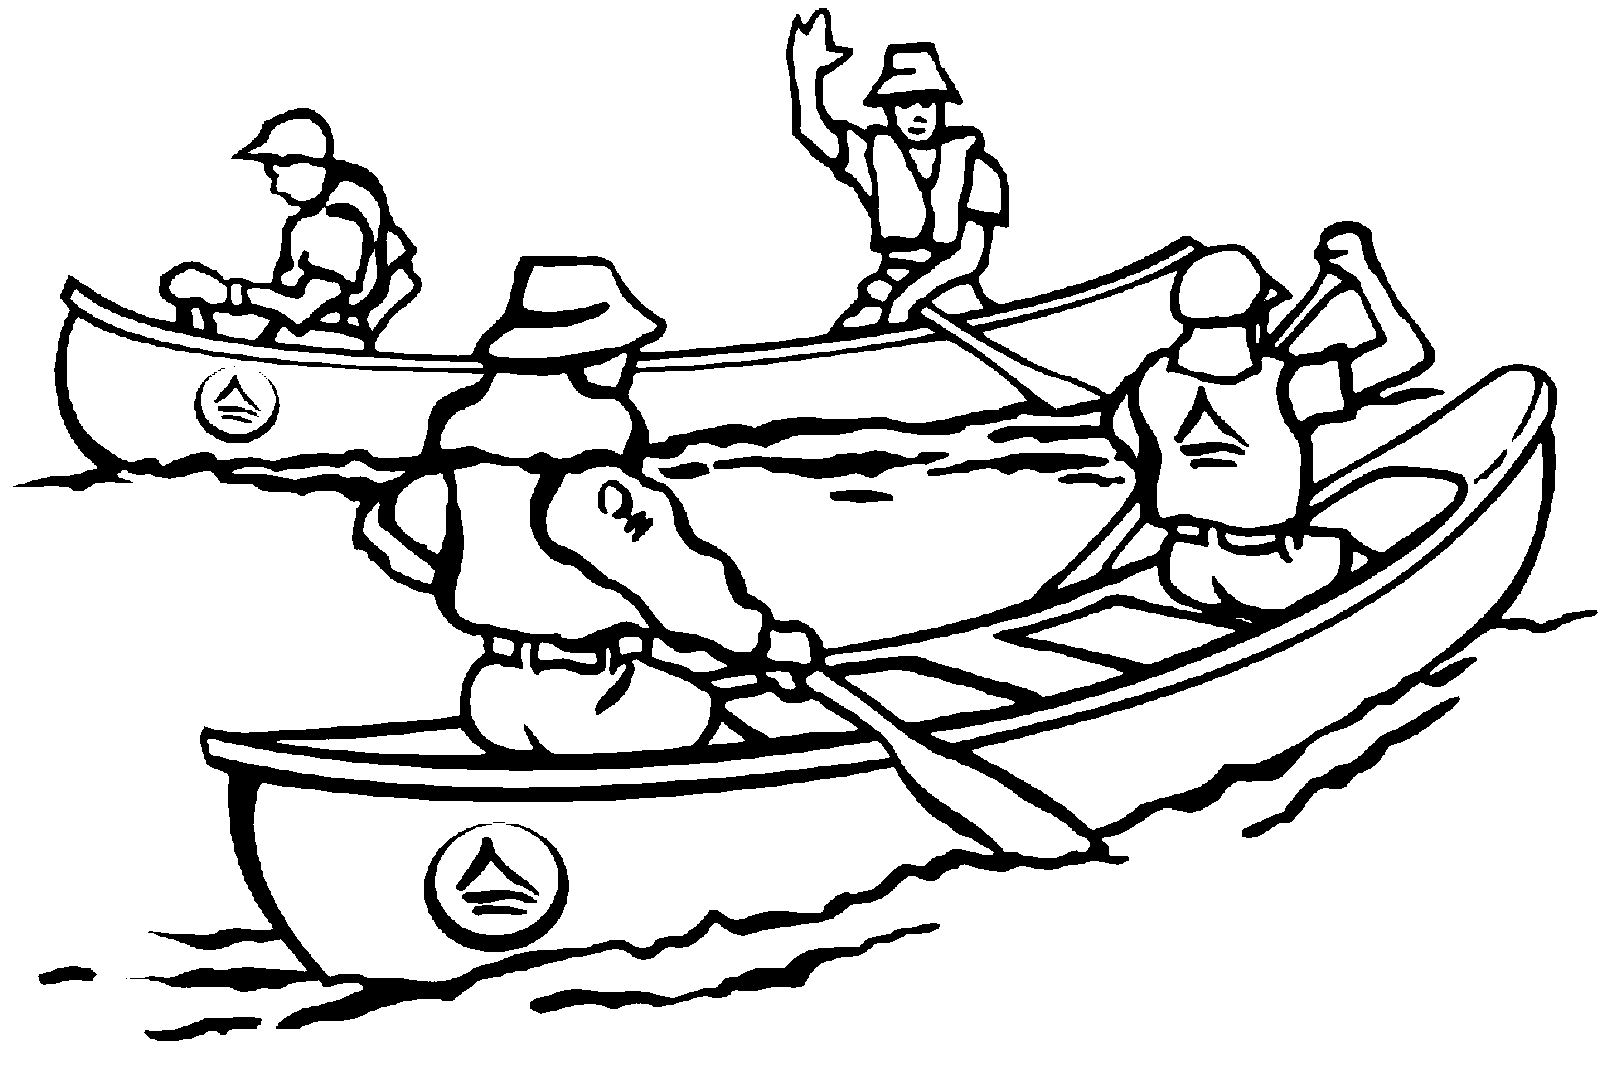 Equipes de canoagem